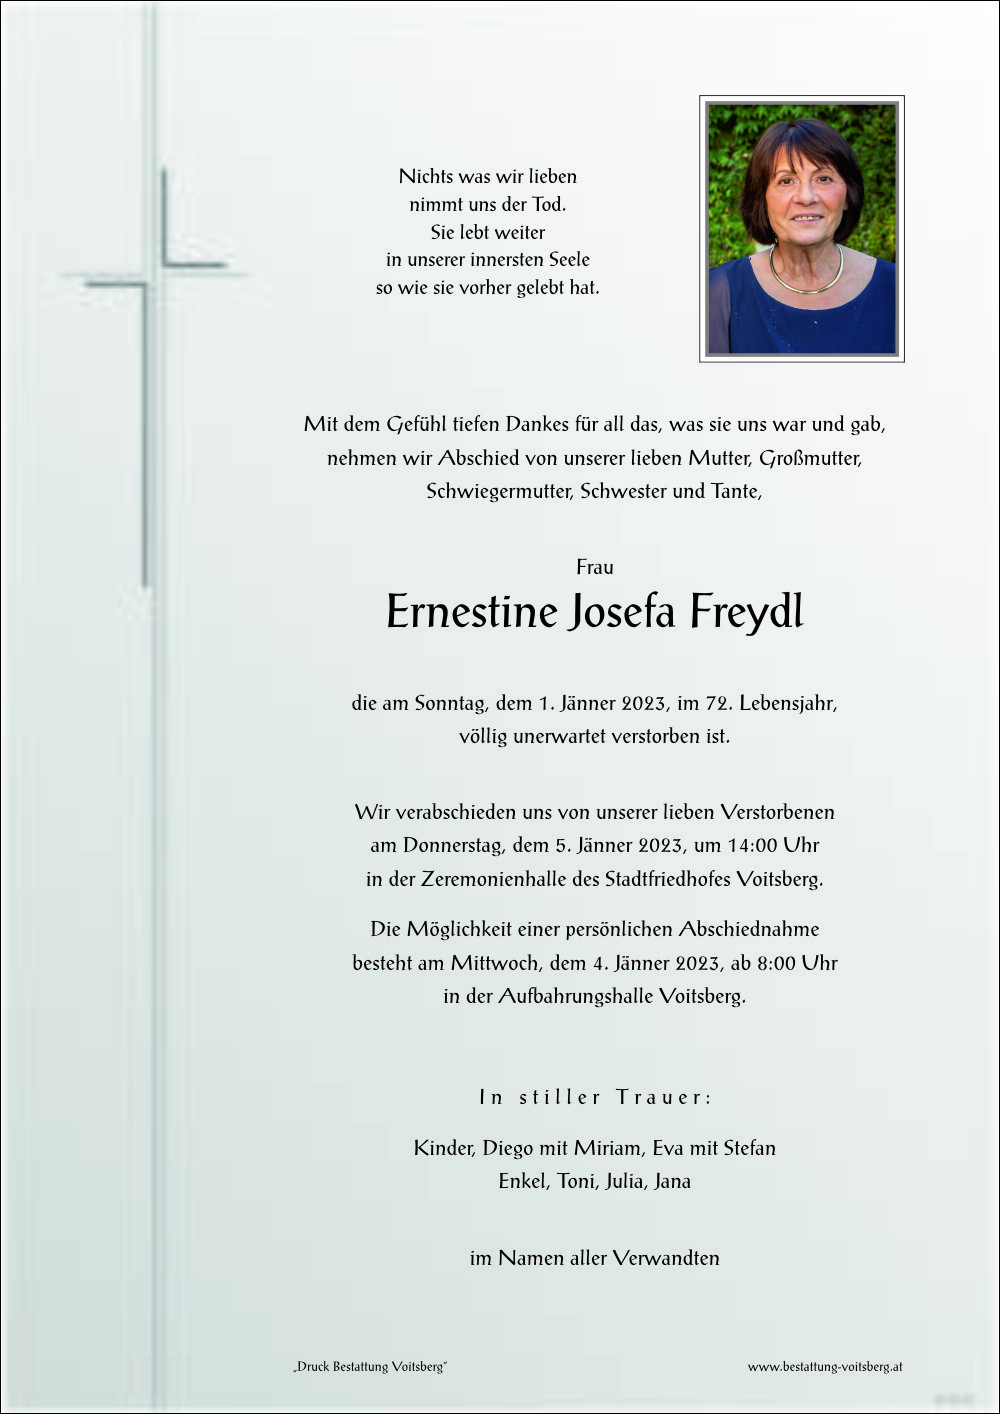 Ernestine Josefa Freydl